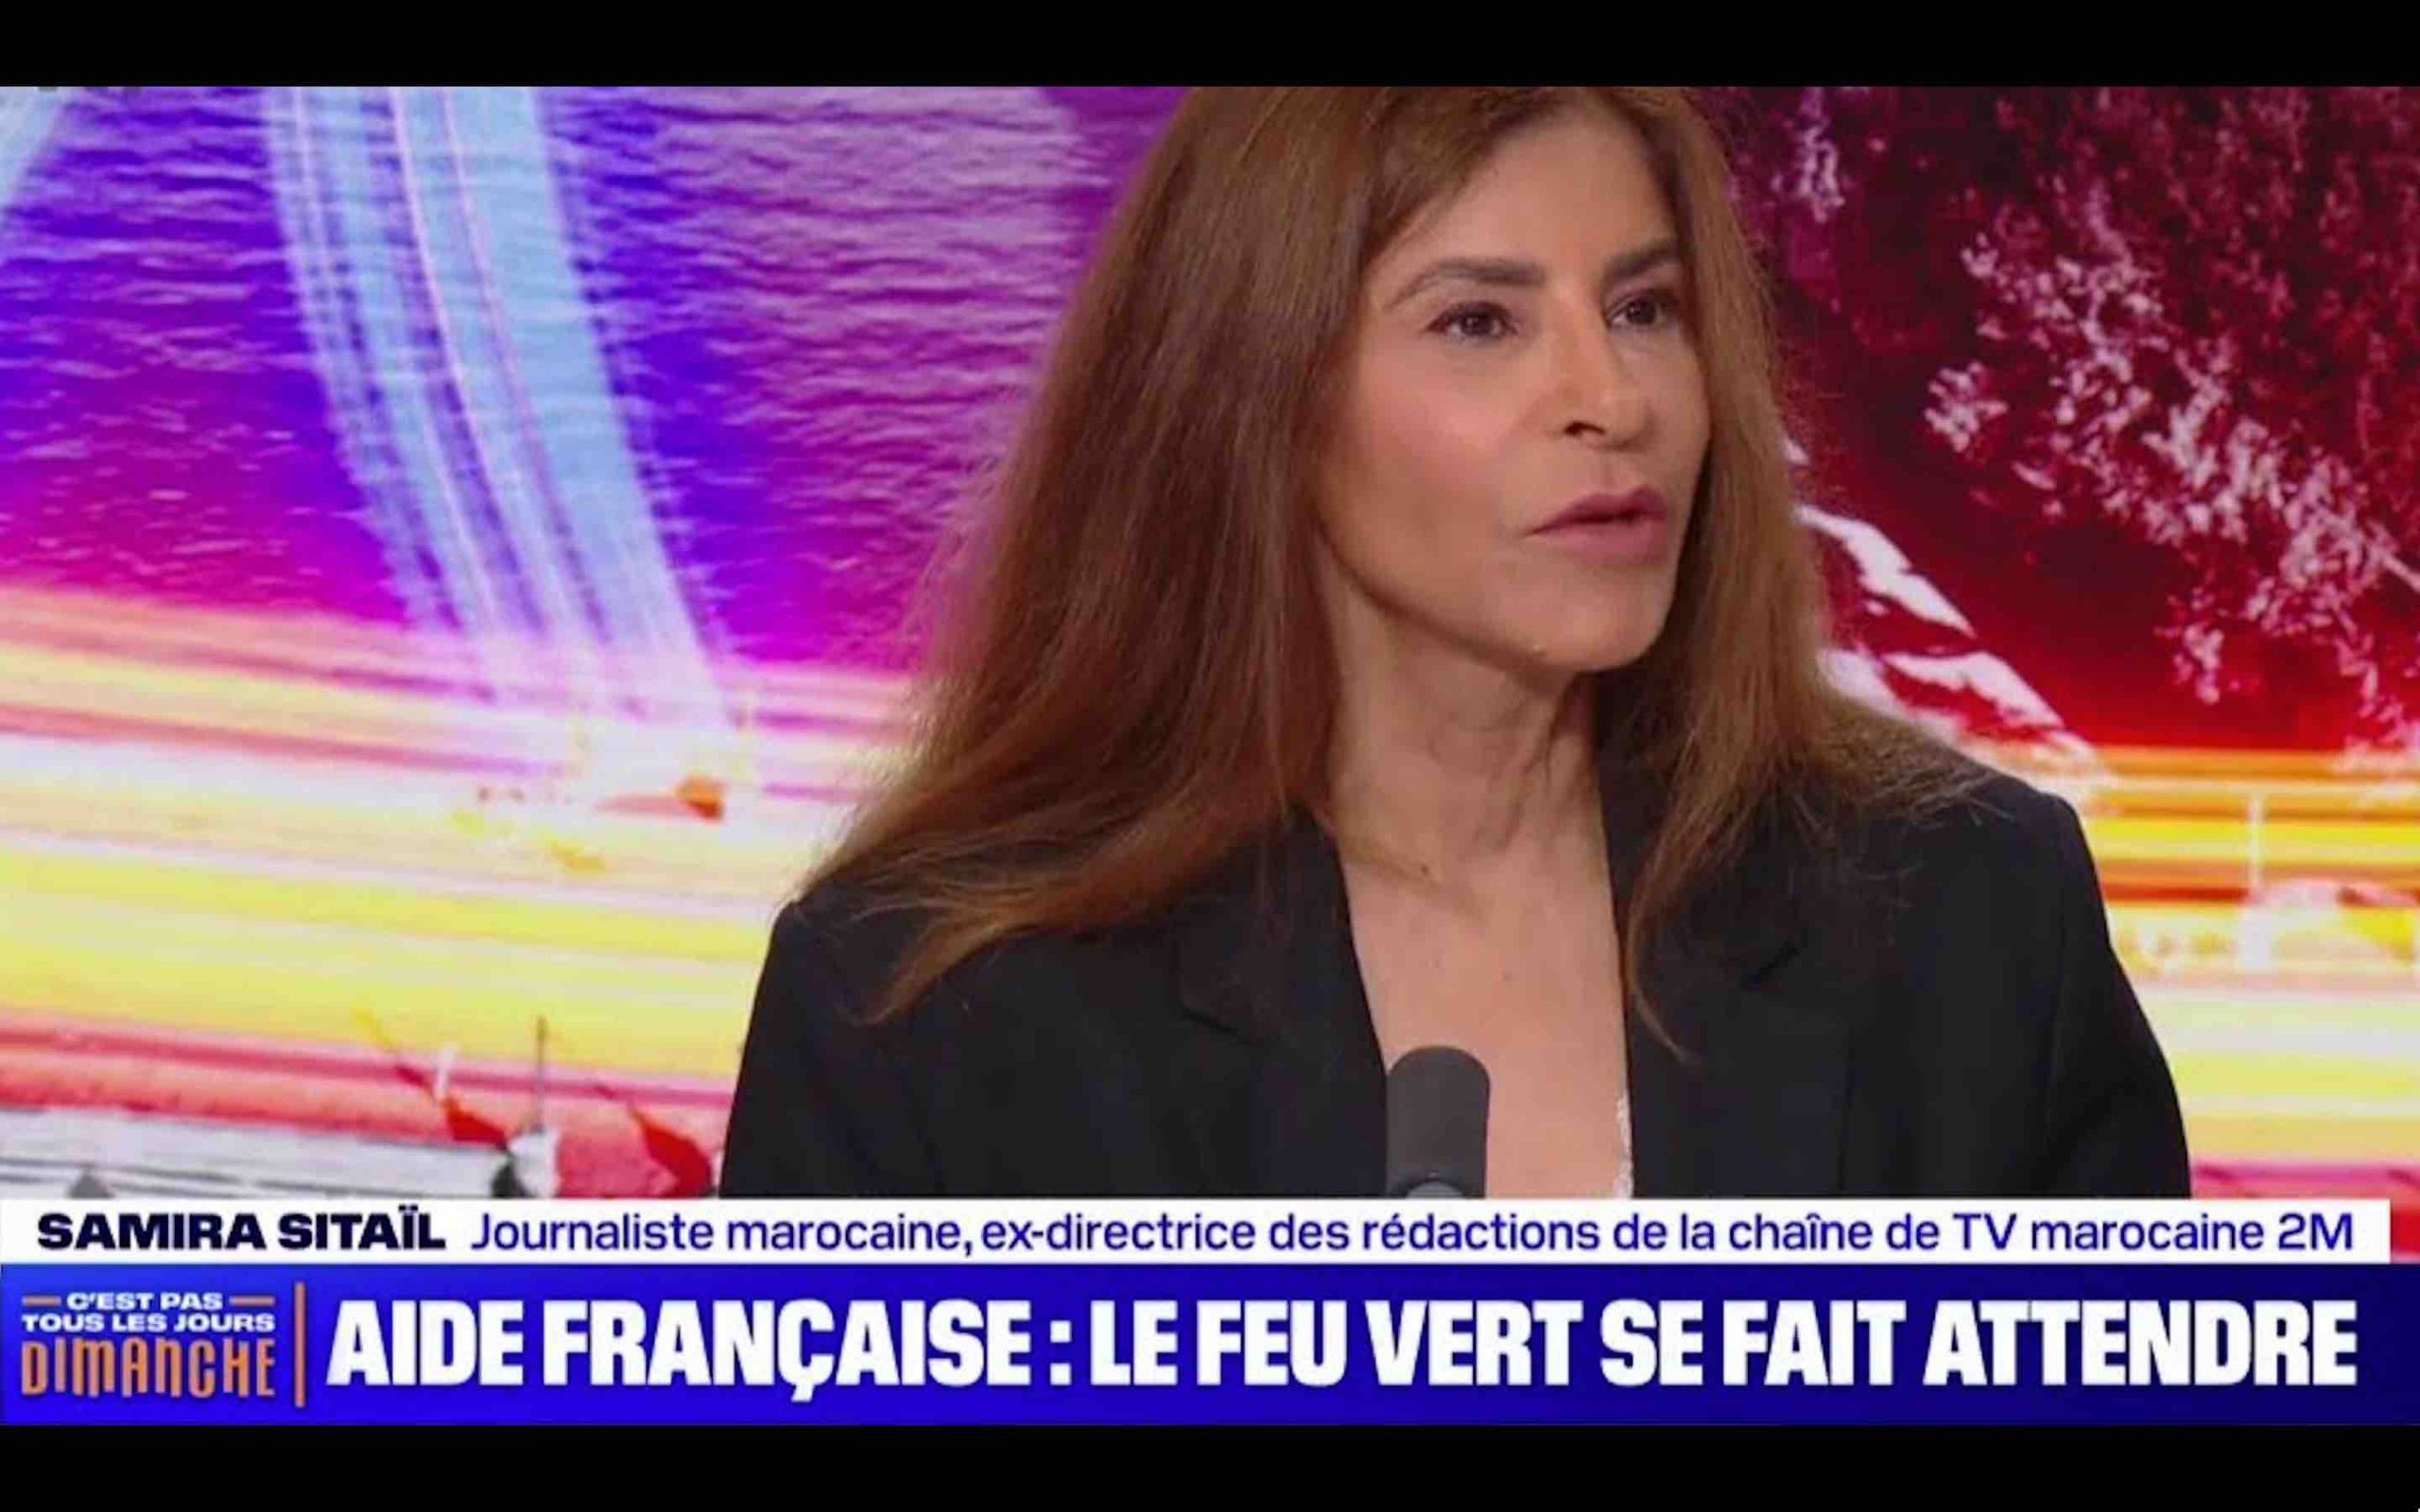 Samira Sitaïl aide France séisme tremblement de terre Maroc médias français